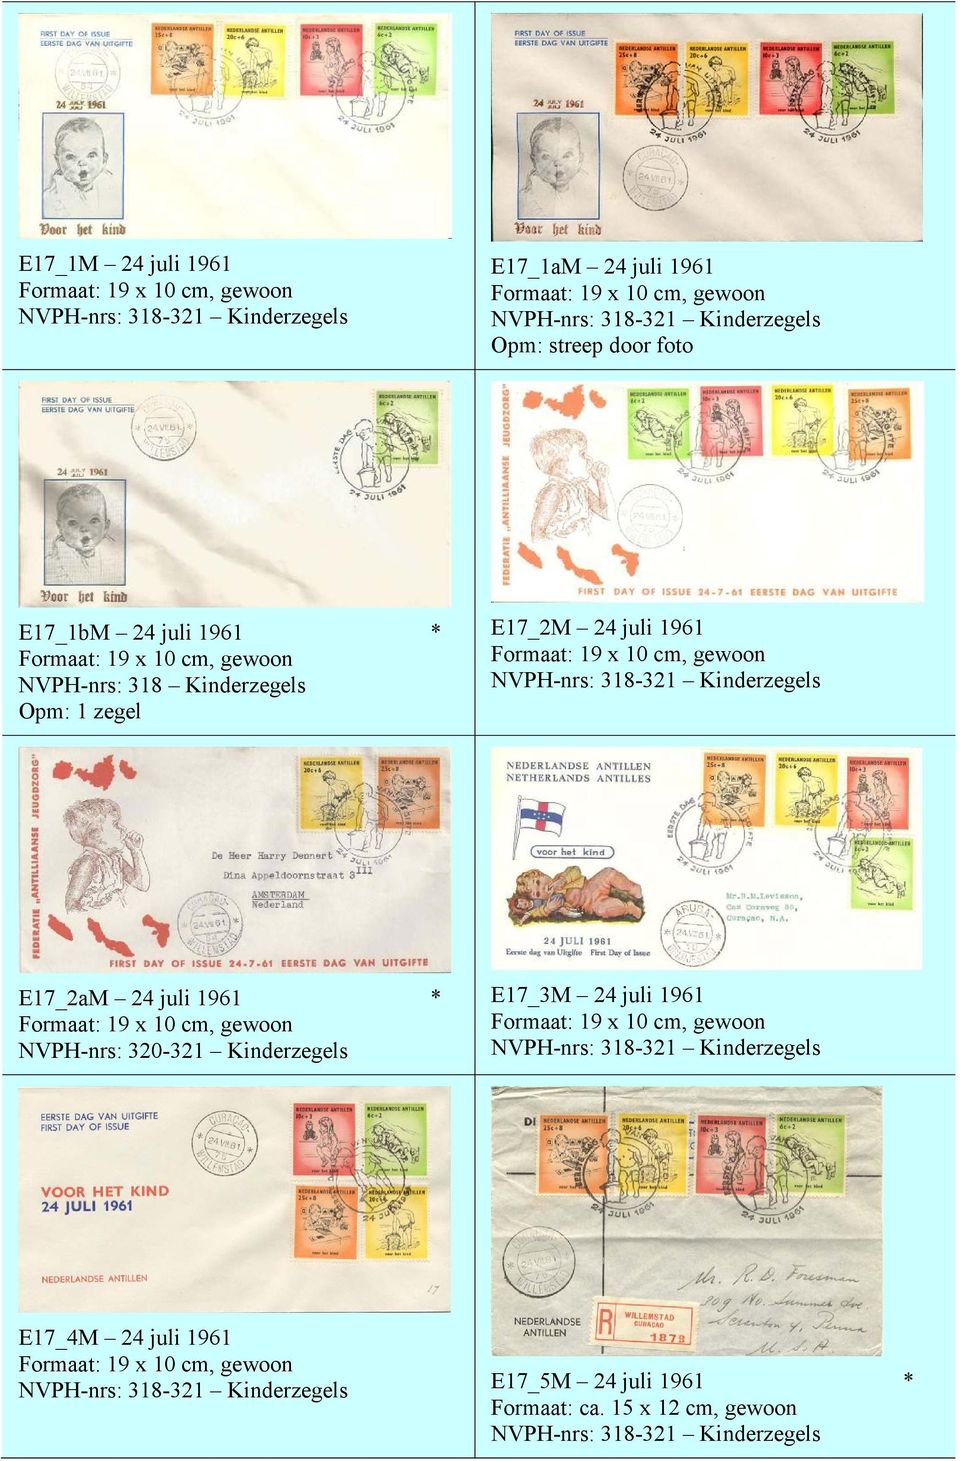 E17_2aM 24 juli 1961 * NVPH-nrs: 320-321 Kinderzegels E17_3M 24 juli 1961